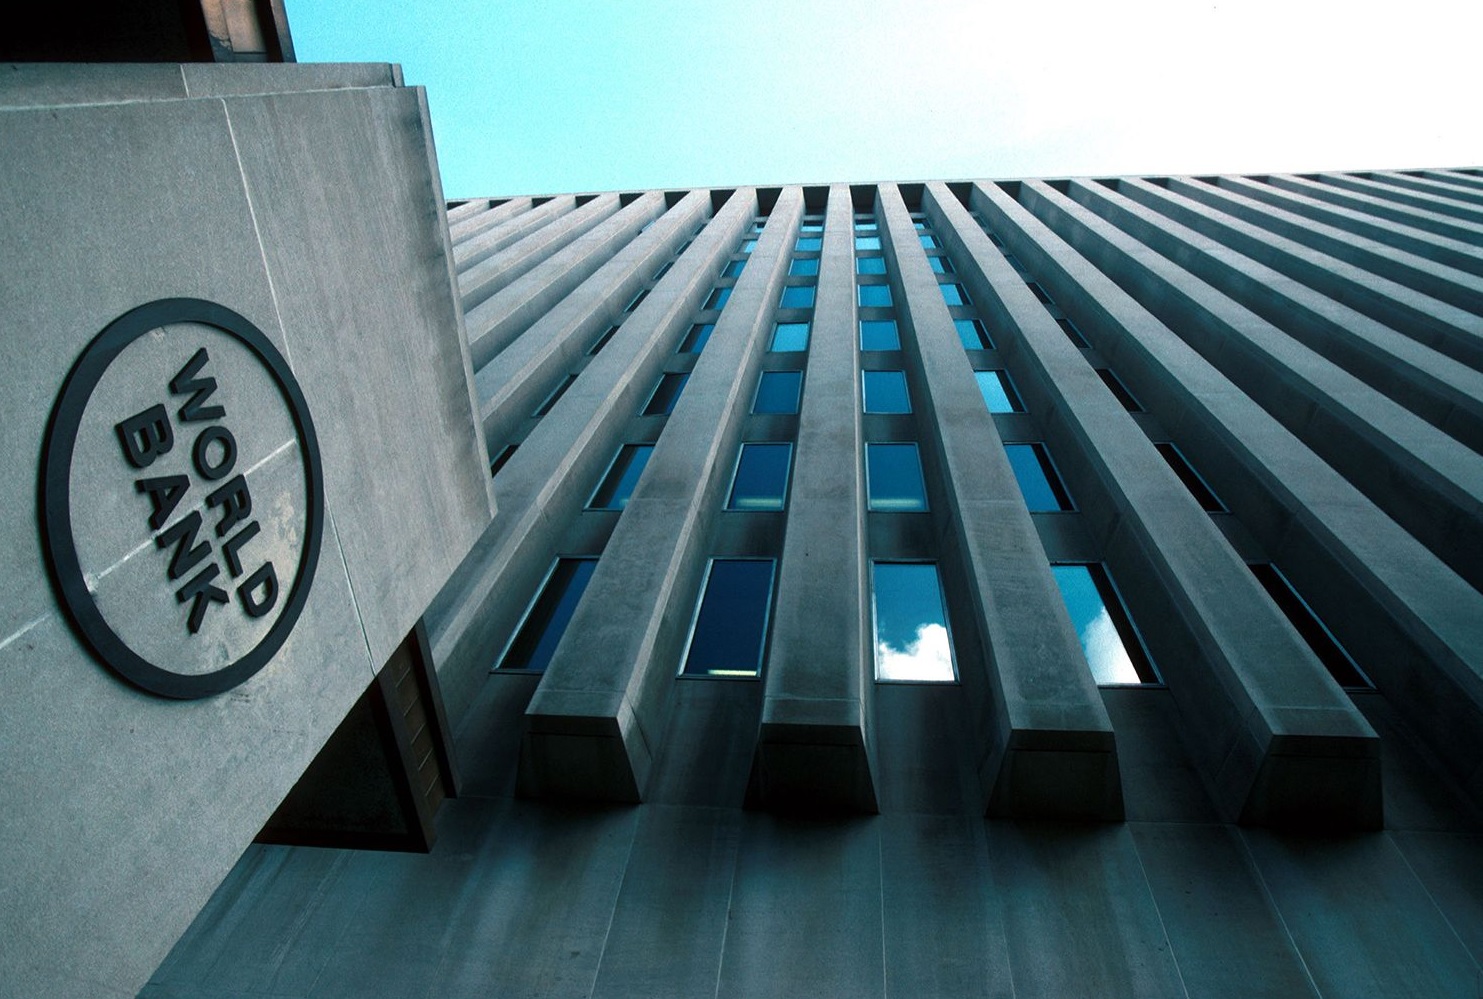 “Azərbaycandakı inflyasiyadan Mərkəzi Bank məşğul olmalıdır” – Dünya Bankı rəsmisi 